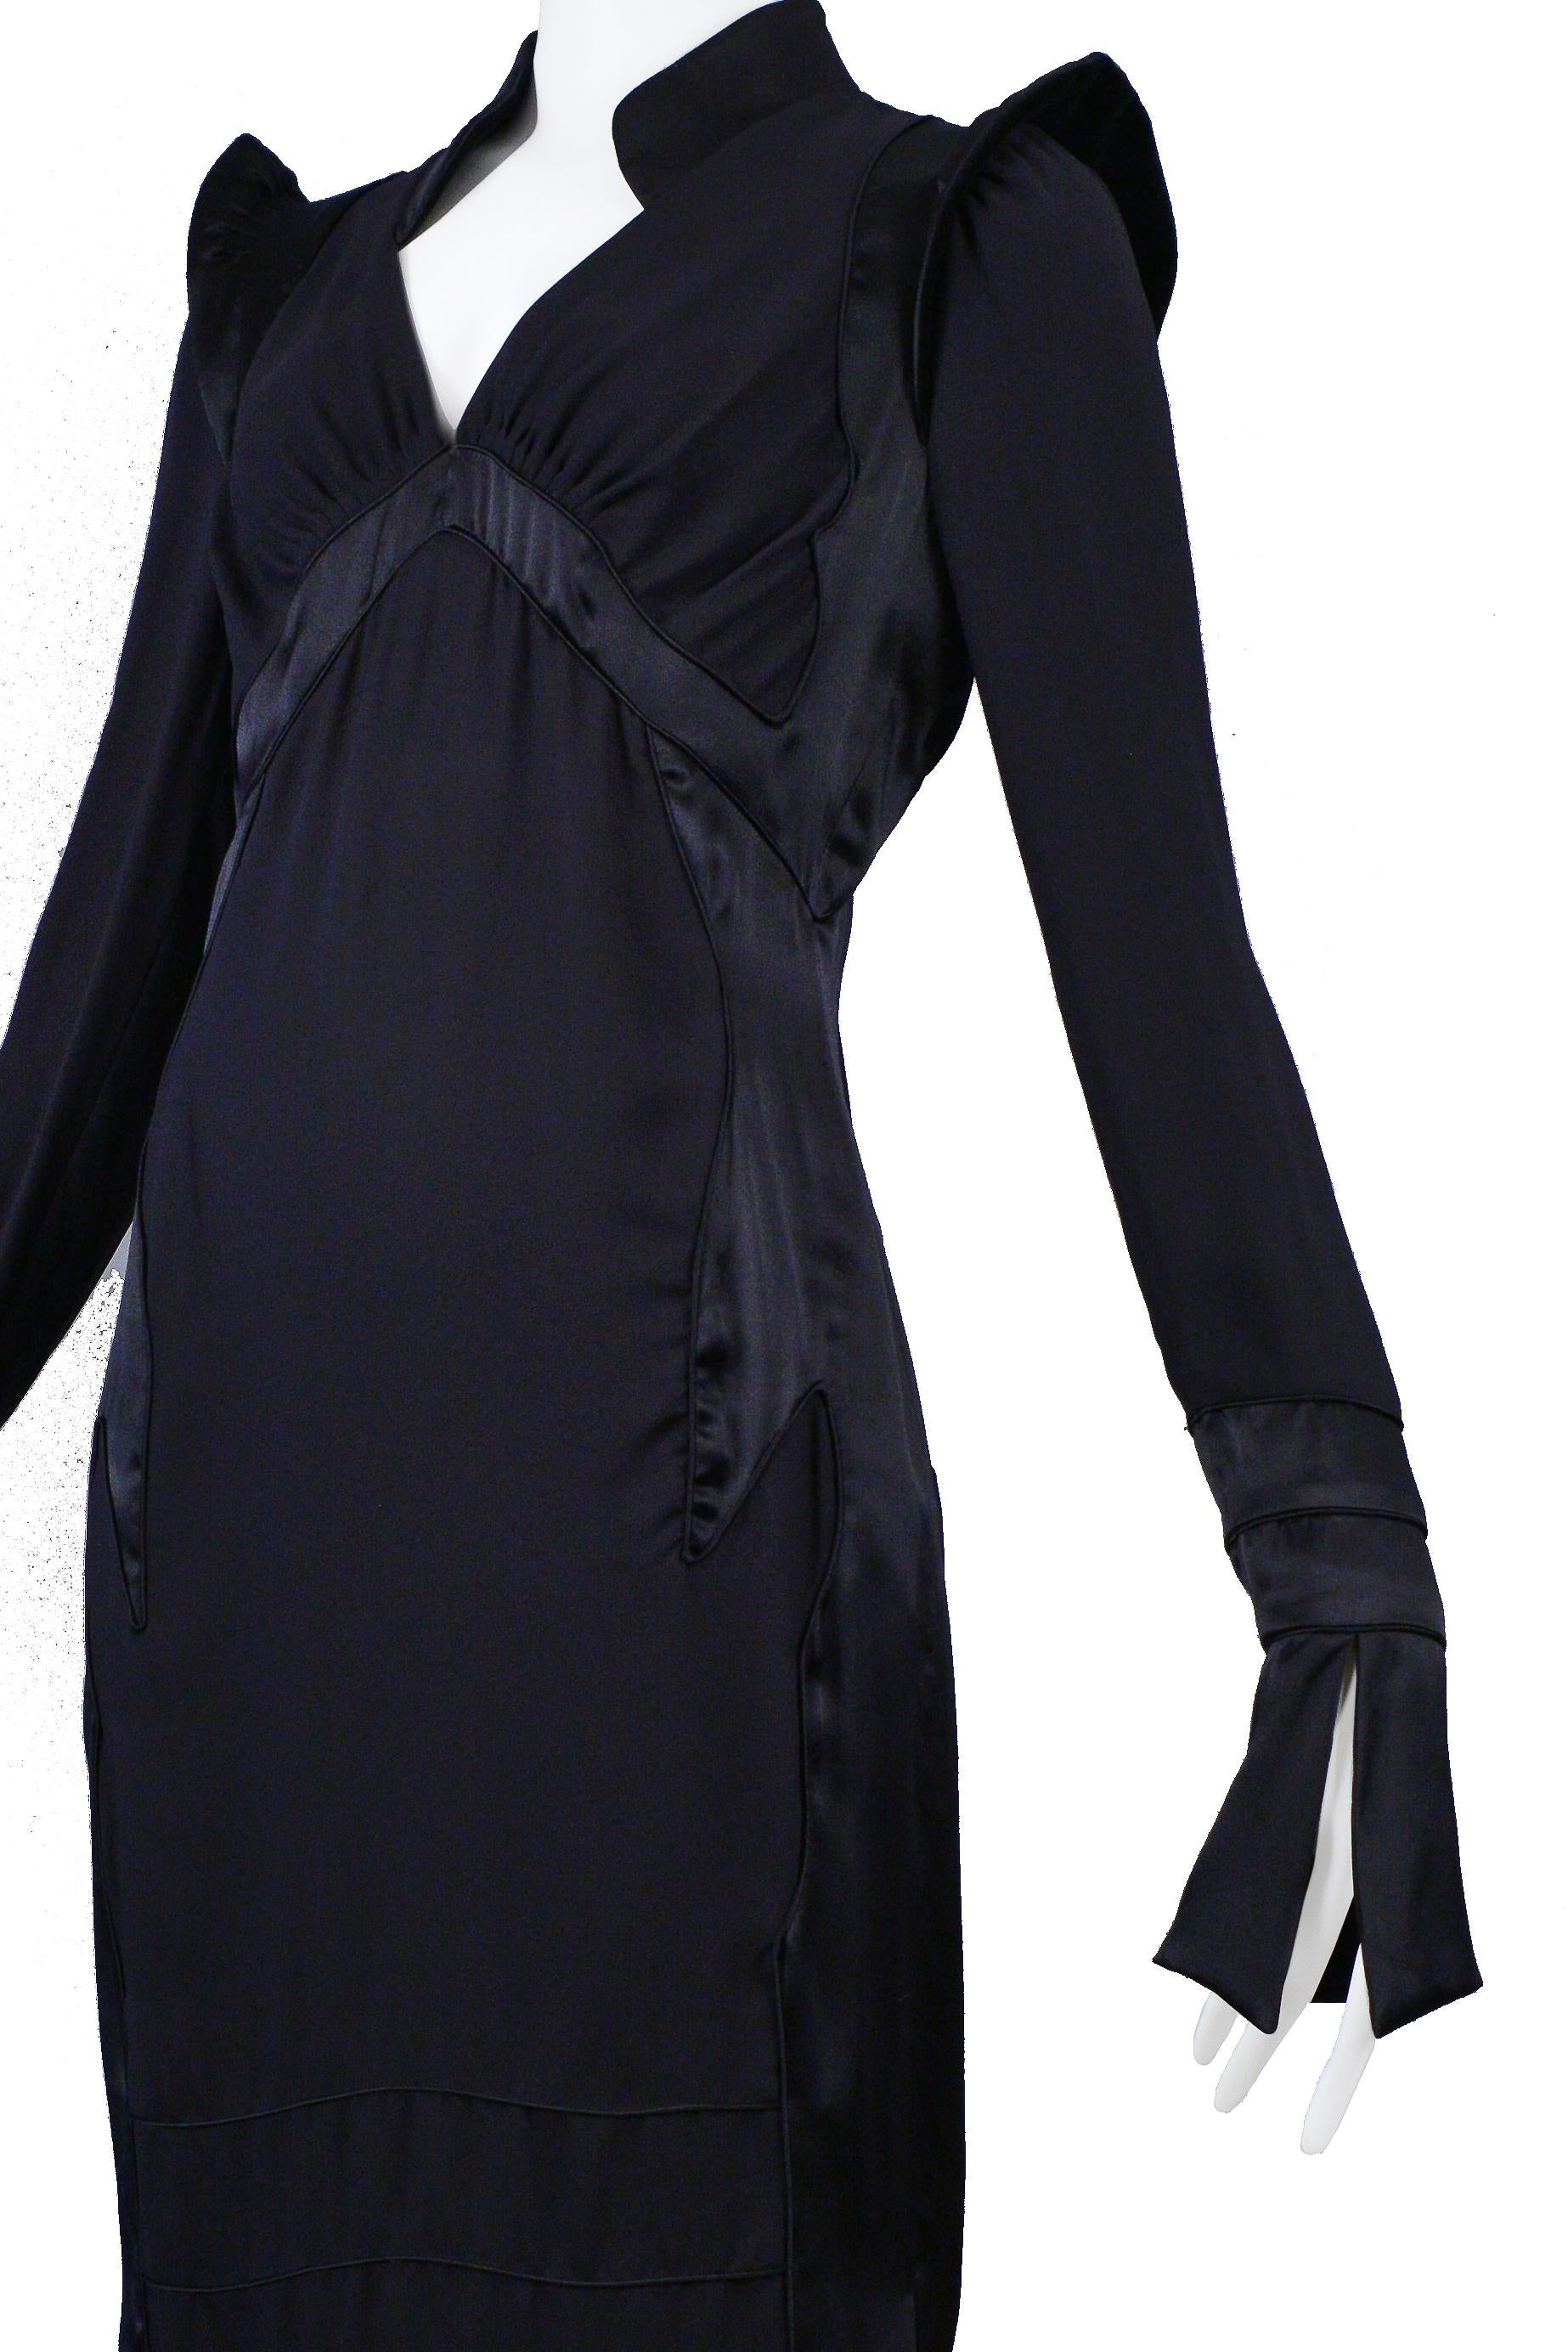 Women's Tom Ford for Yves Saint Laurent Black Silk Dress 2004 For Sale